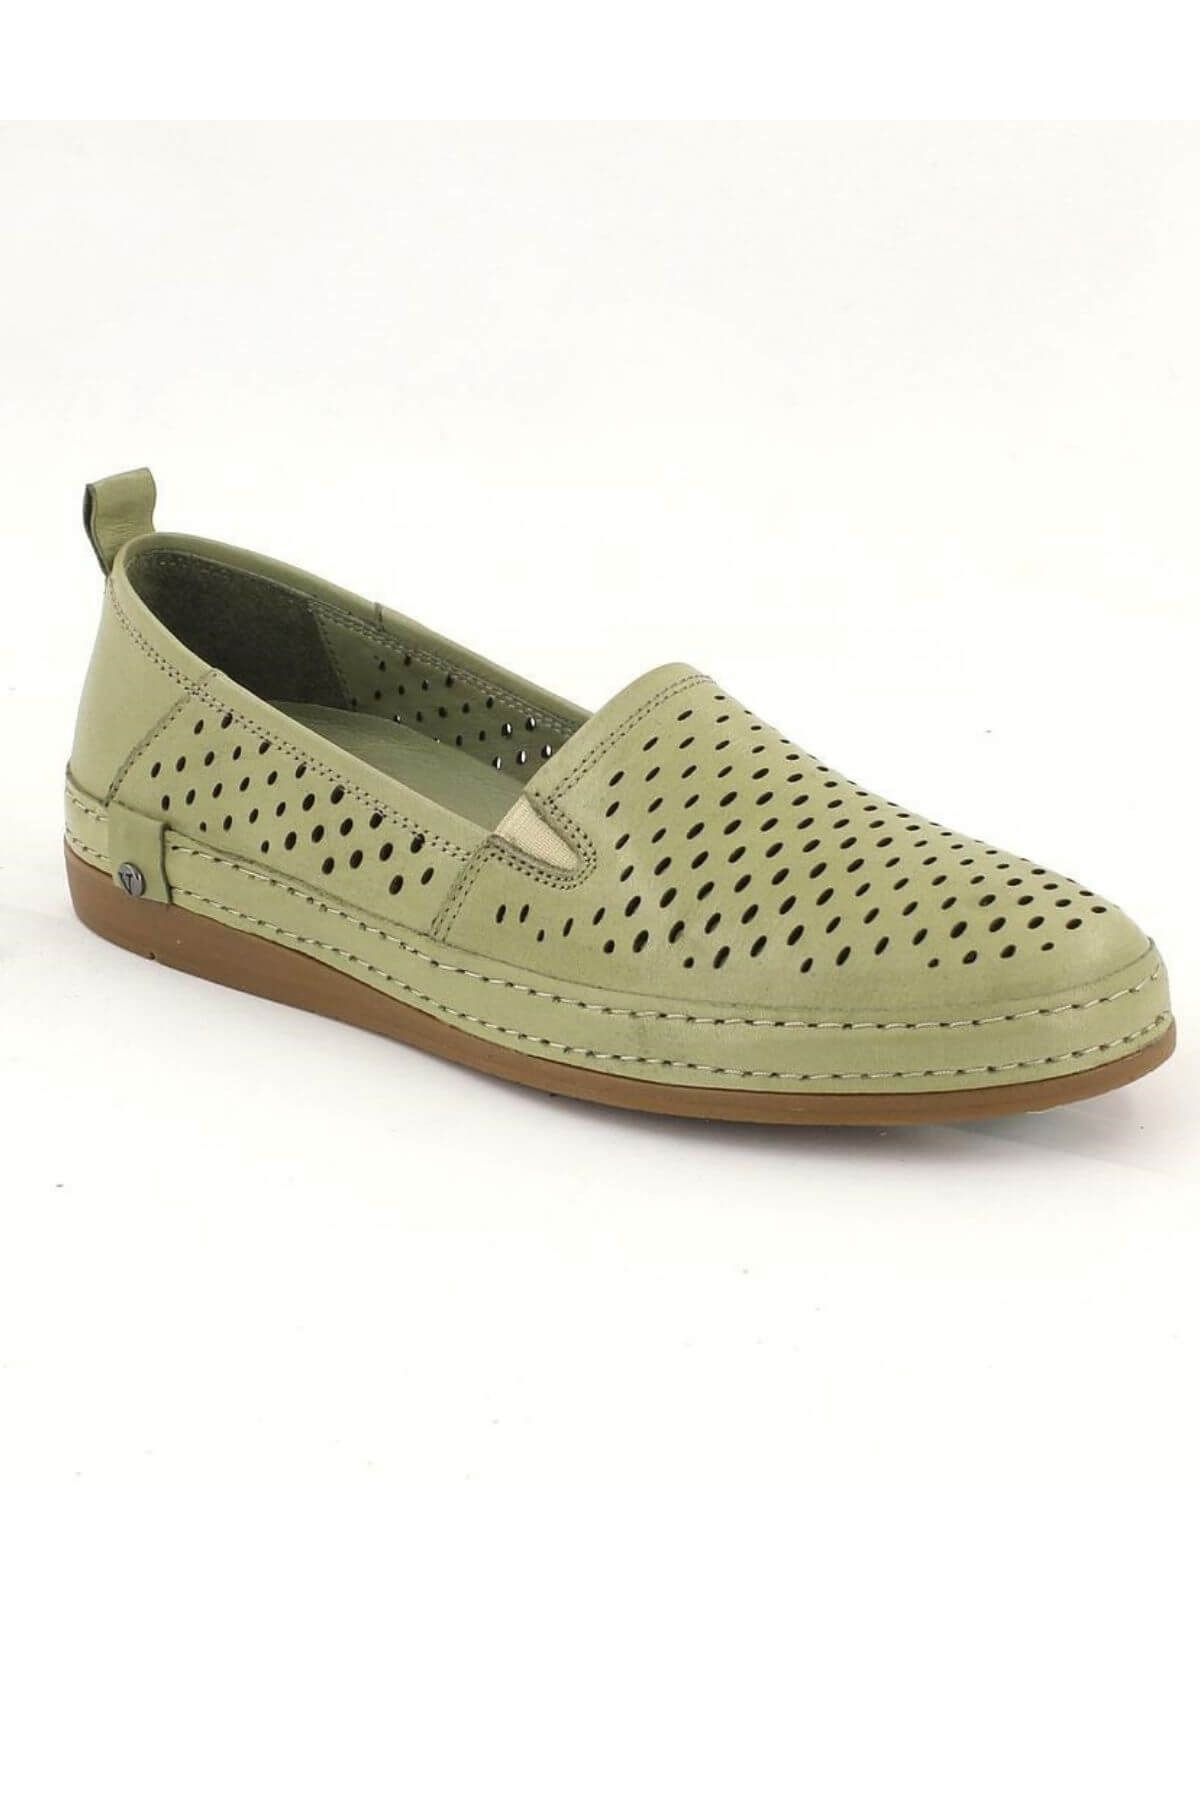 Kadın Yazlık Comfort Deri Ayakkabı Yeşil 2211201Y